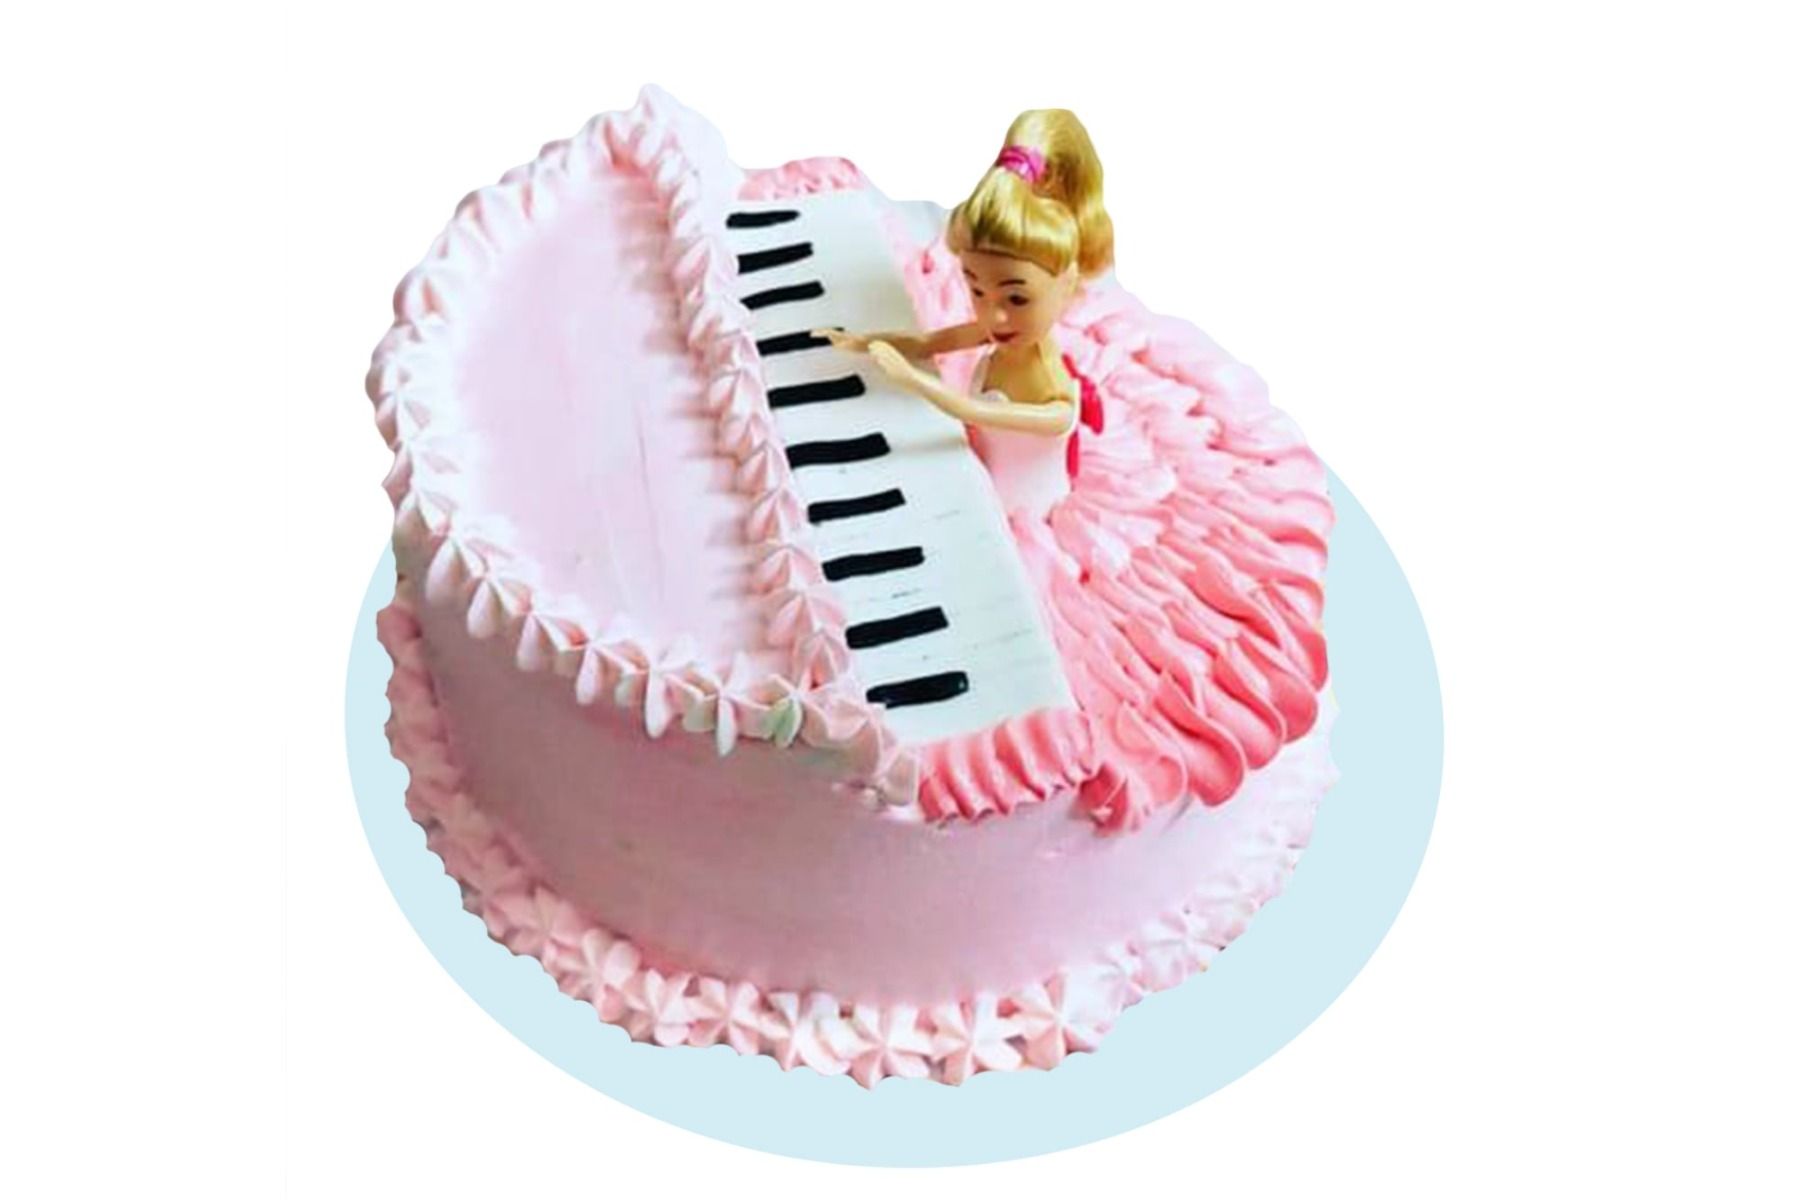 Barbie Doll Cake - The Cakeroom Bakery Shop-sgquangbinhtourist.com.vn